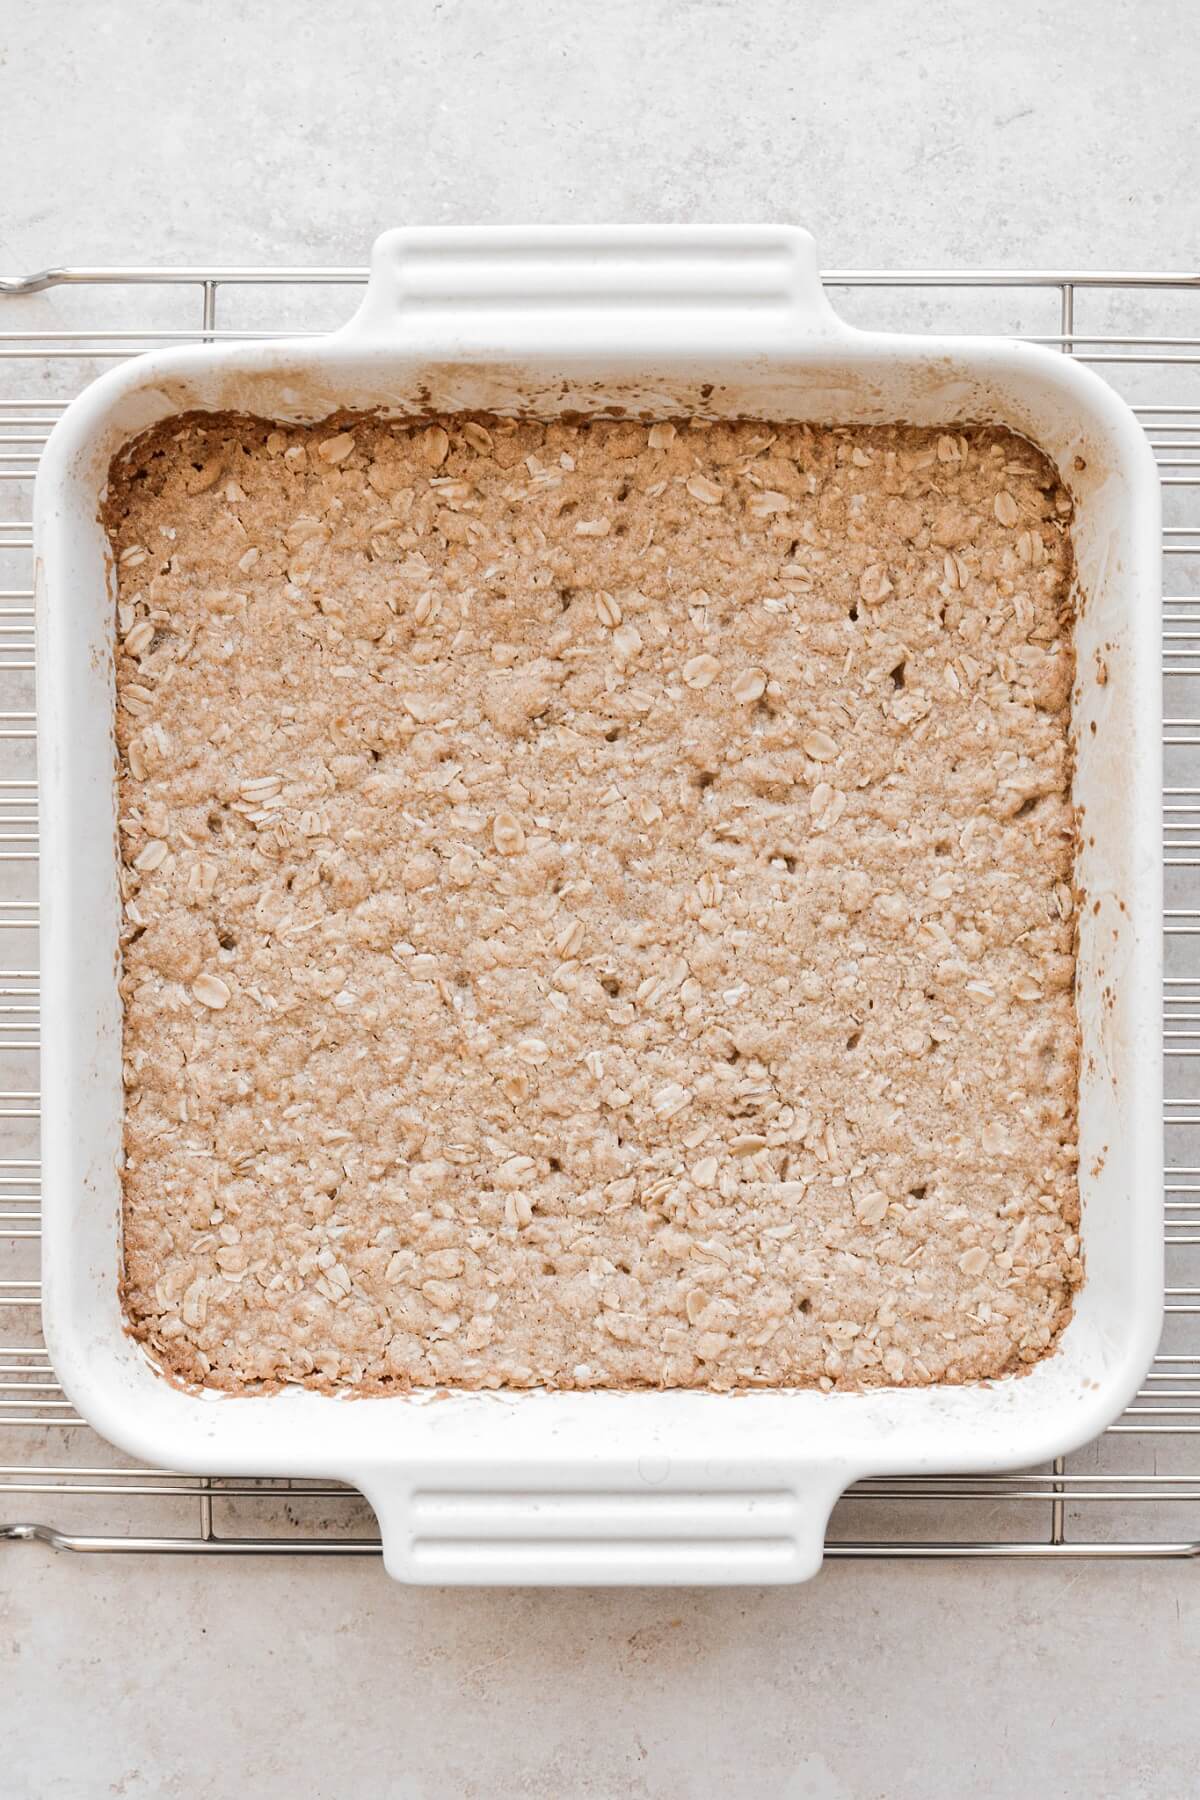 Step 6 for making oatmeal crumble crust.